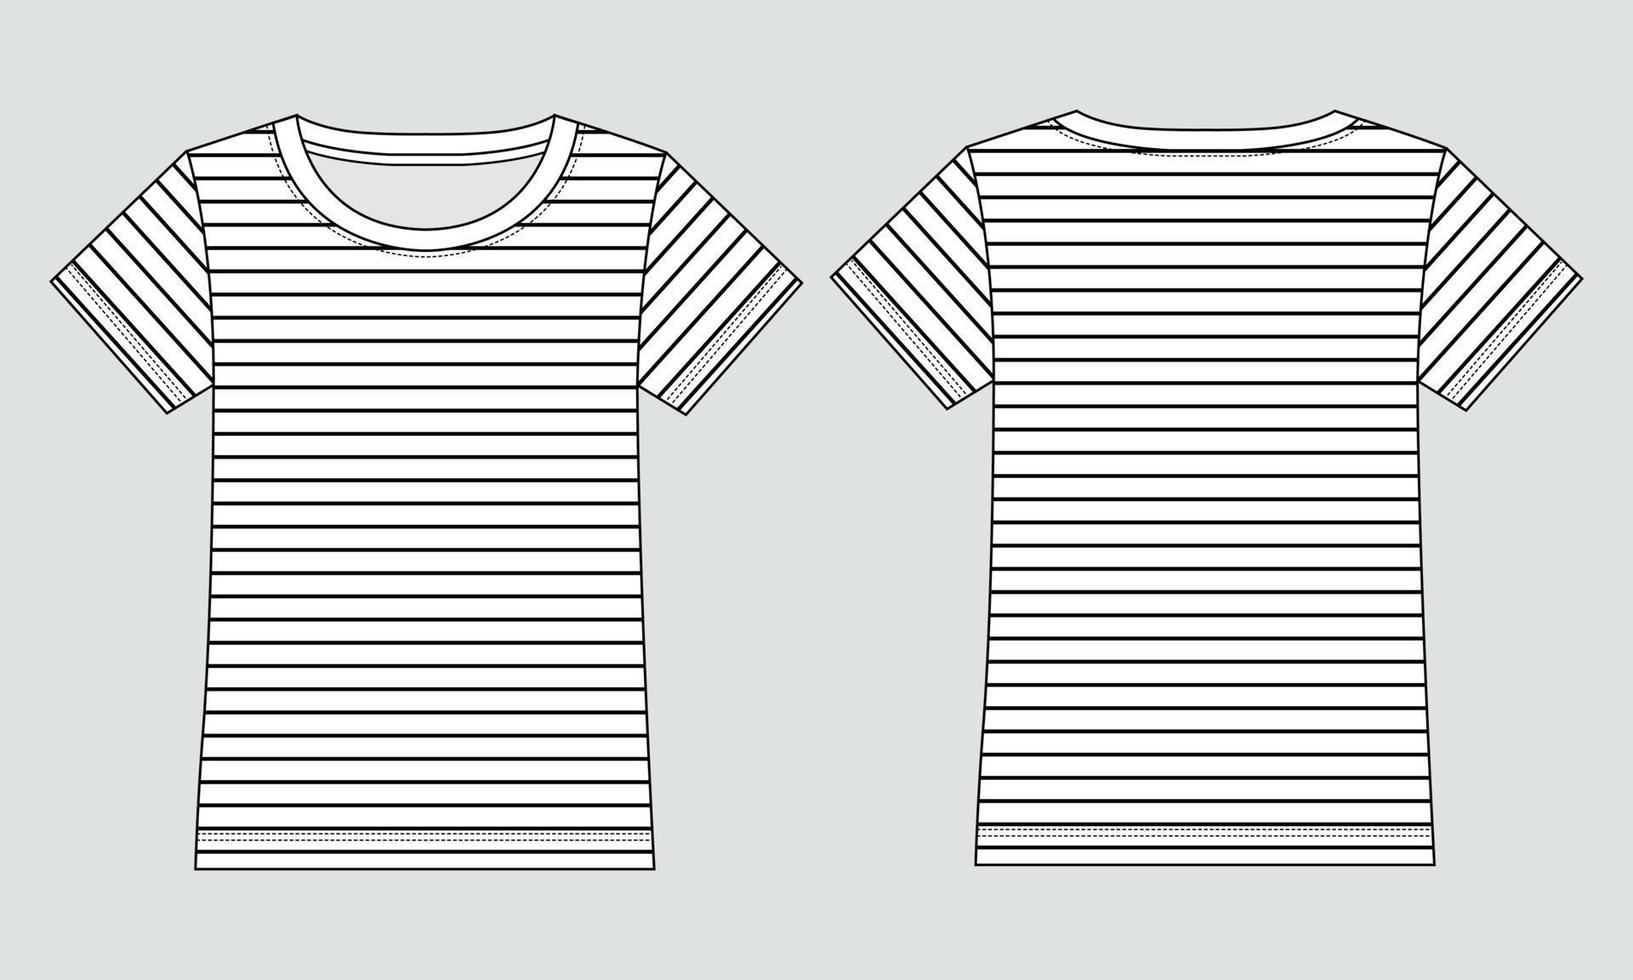 Kurzarm-T-Shirt technische Mode flache Skizze Vektor-Illustration grüne Farbvorlage für Damen und Babys vektor